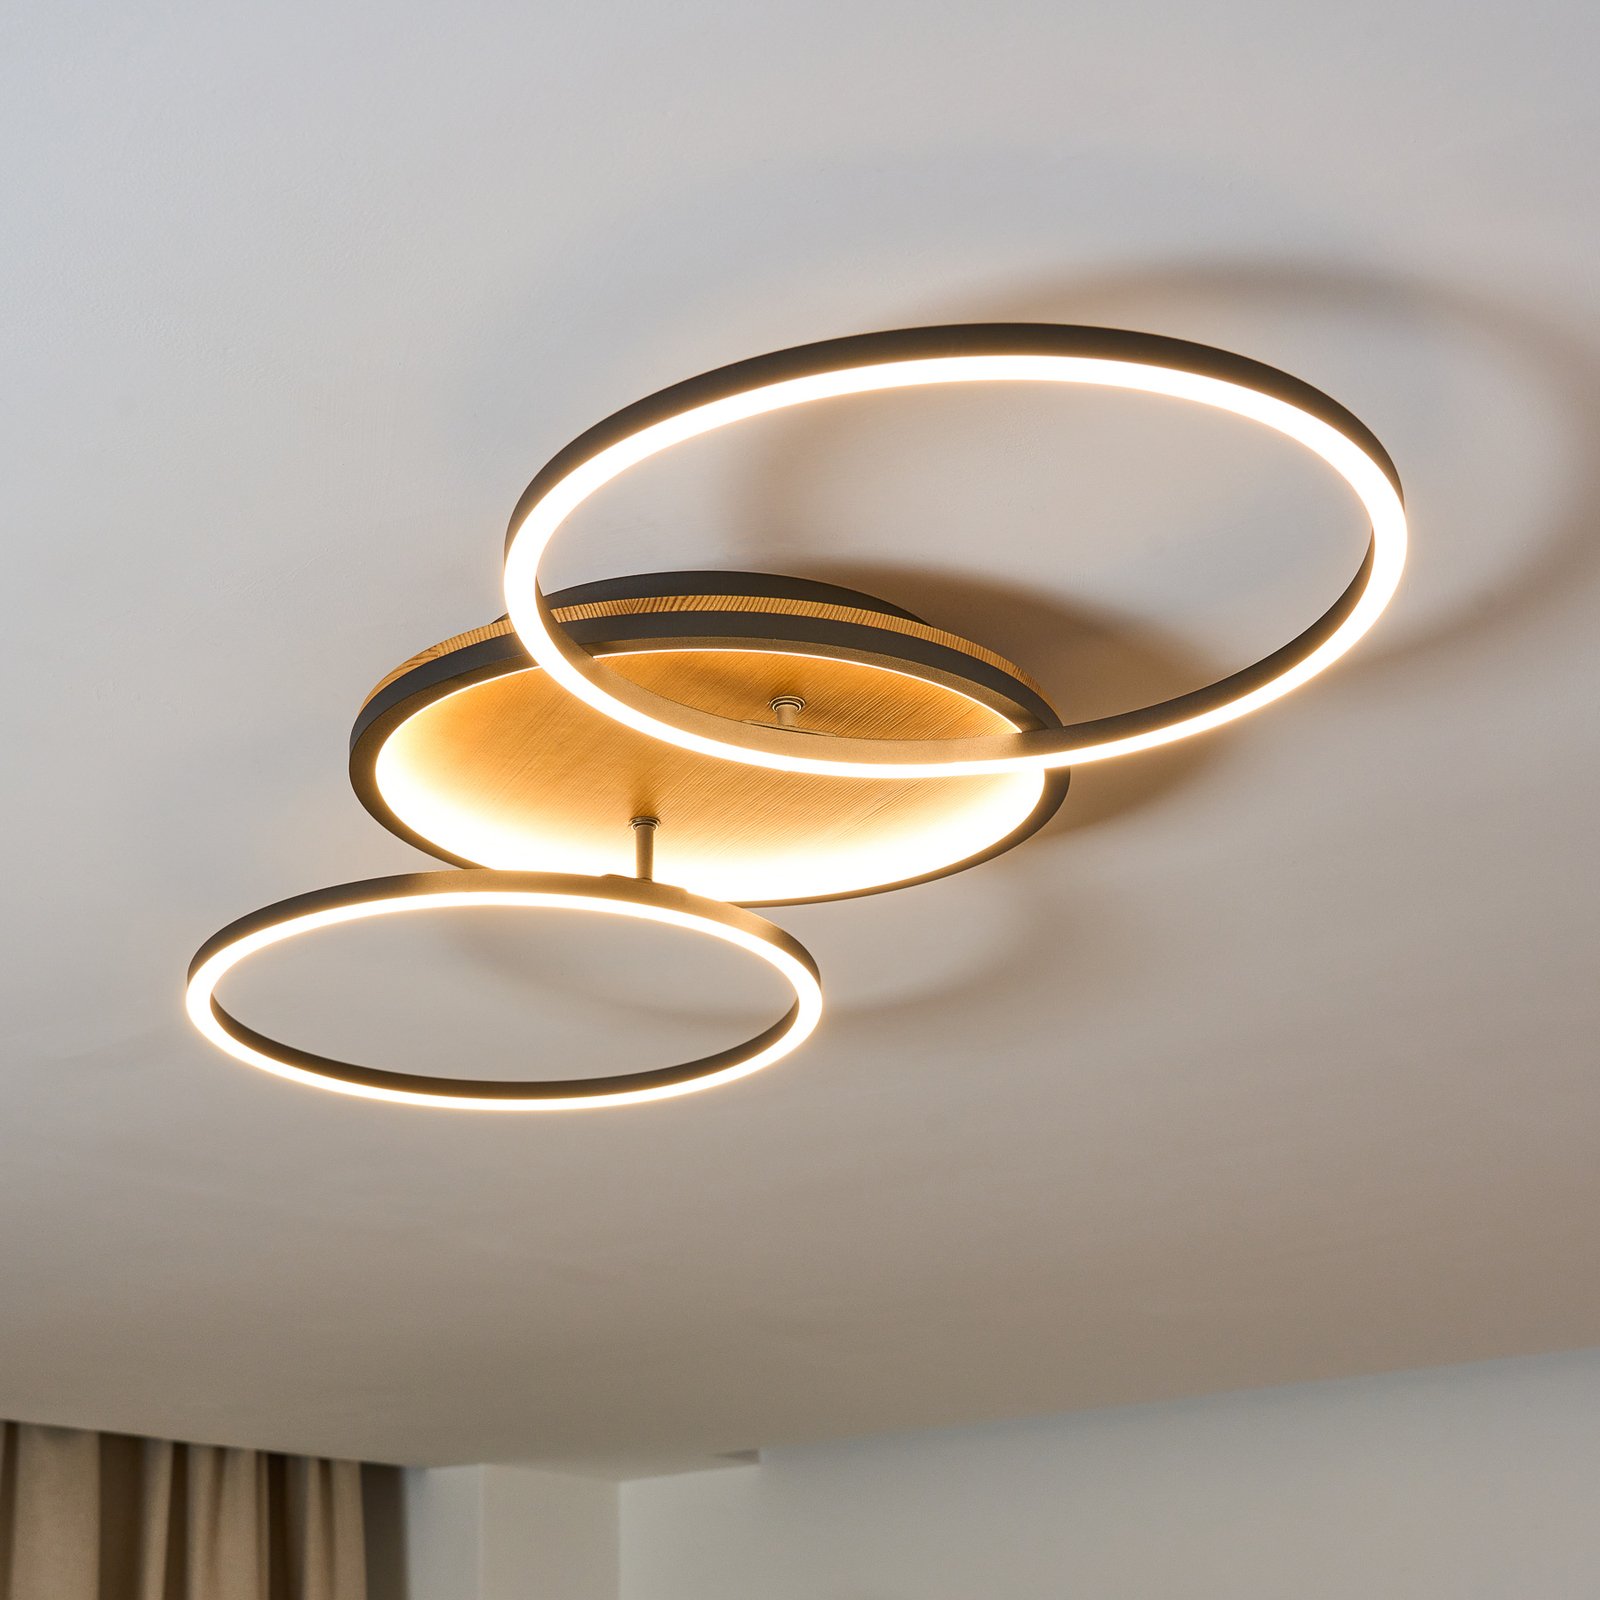 Kiru LED stropna svjetiljka, bor, dužina 87,4 cm, 2 žarulje, drvo